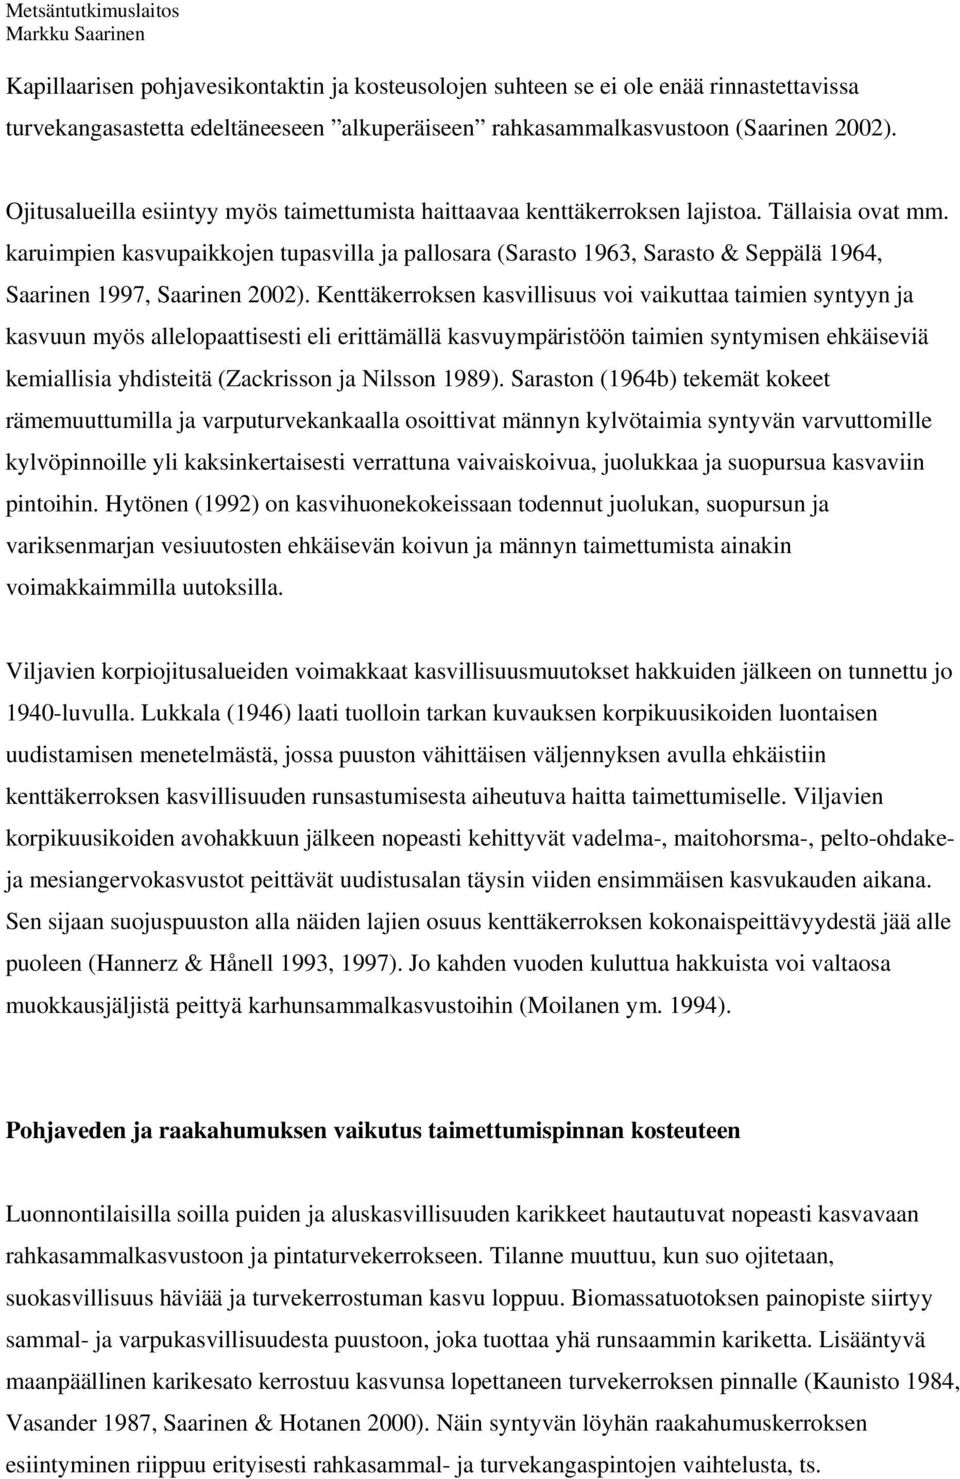 karuimpien kasvupaikkojen tupasvilla ja pallosara (Sarasto 1963, Sarasto & Seppälä 1964, Saarinen 1997, Saarinen 2002).